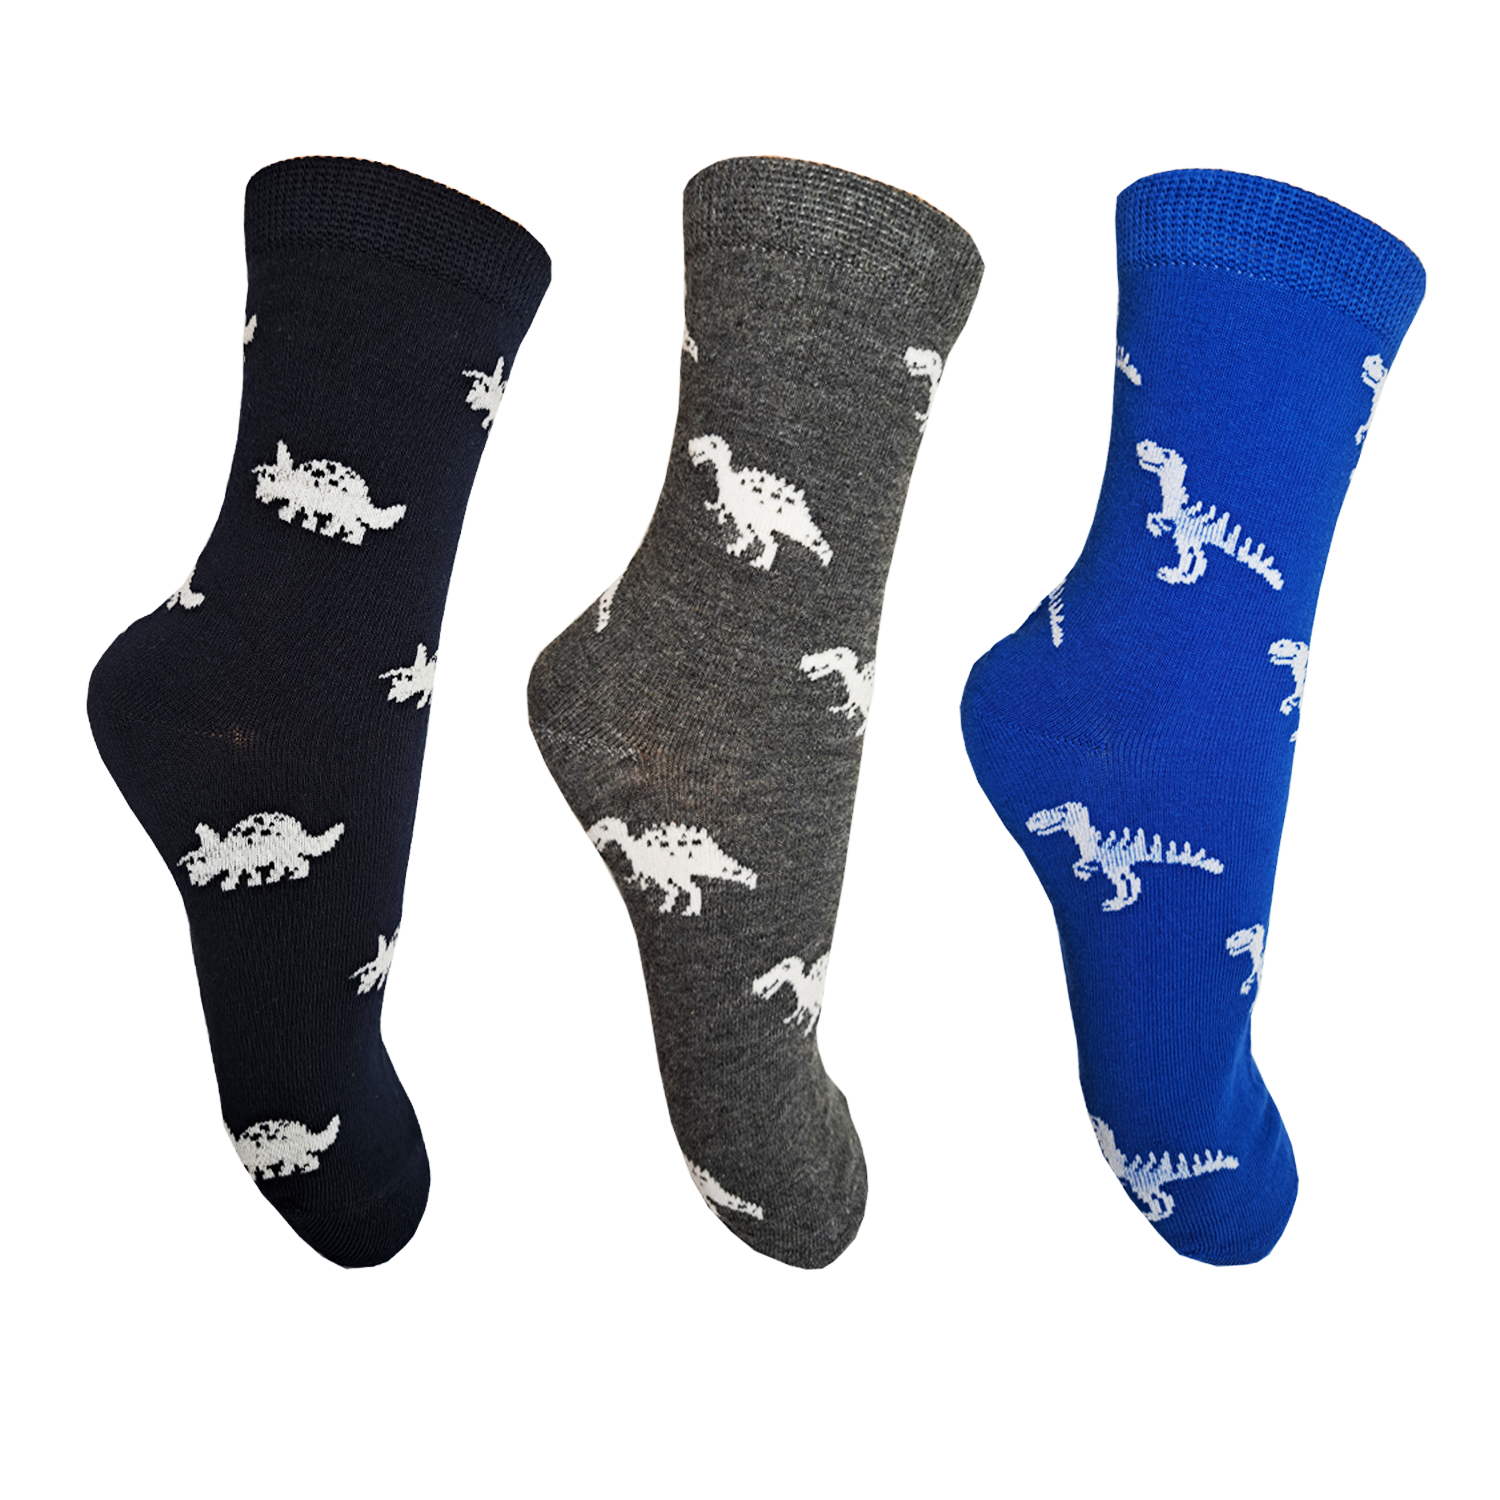 Chlapecké ponožky - Aura.Via GZF8703, šedá, modrá, tmavě modrá Barva: Mix barev, Velikost: 24-27